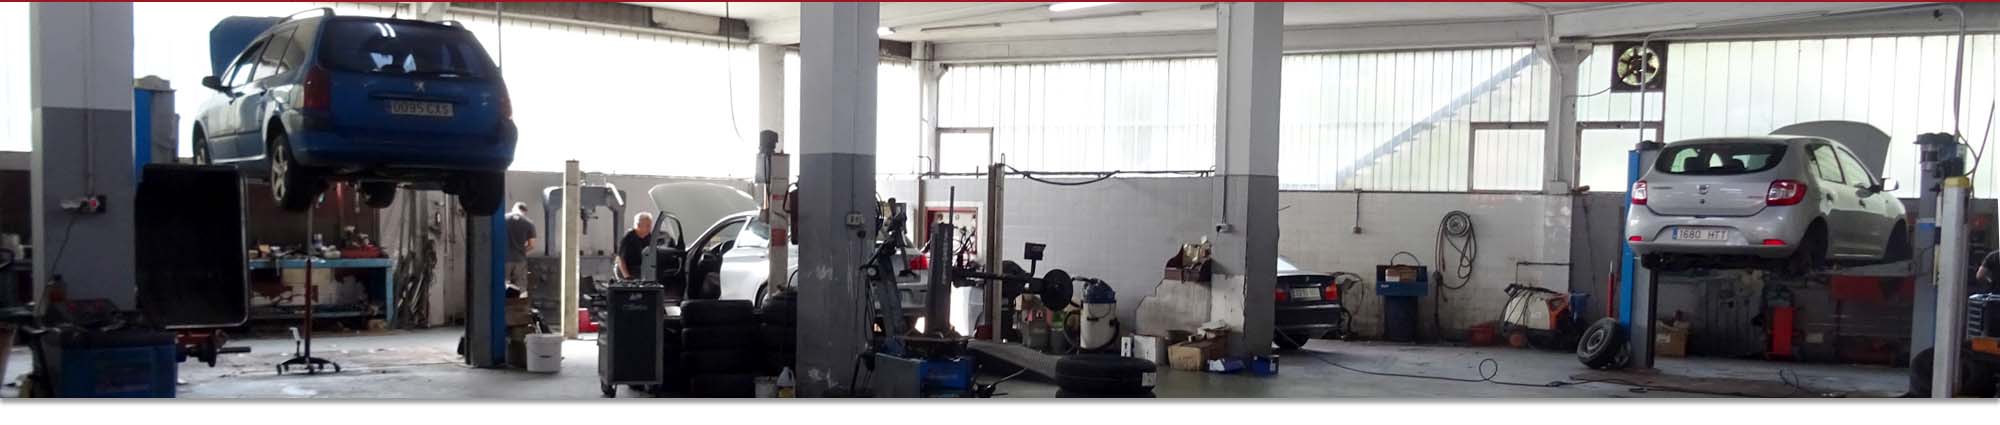 Garaje San Ignacio - Taller de reparación del automovil - Servicio oficial Fiat, Alfa Romeo, Jeep en Tolosa (Gipuzkoa)